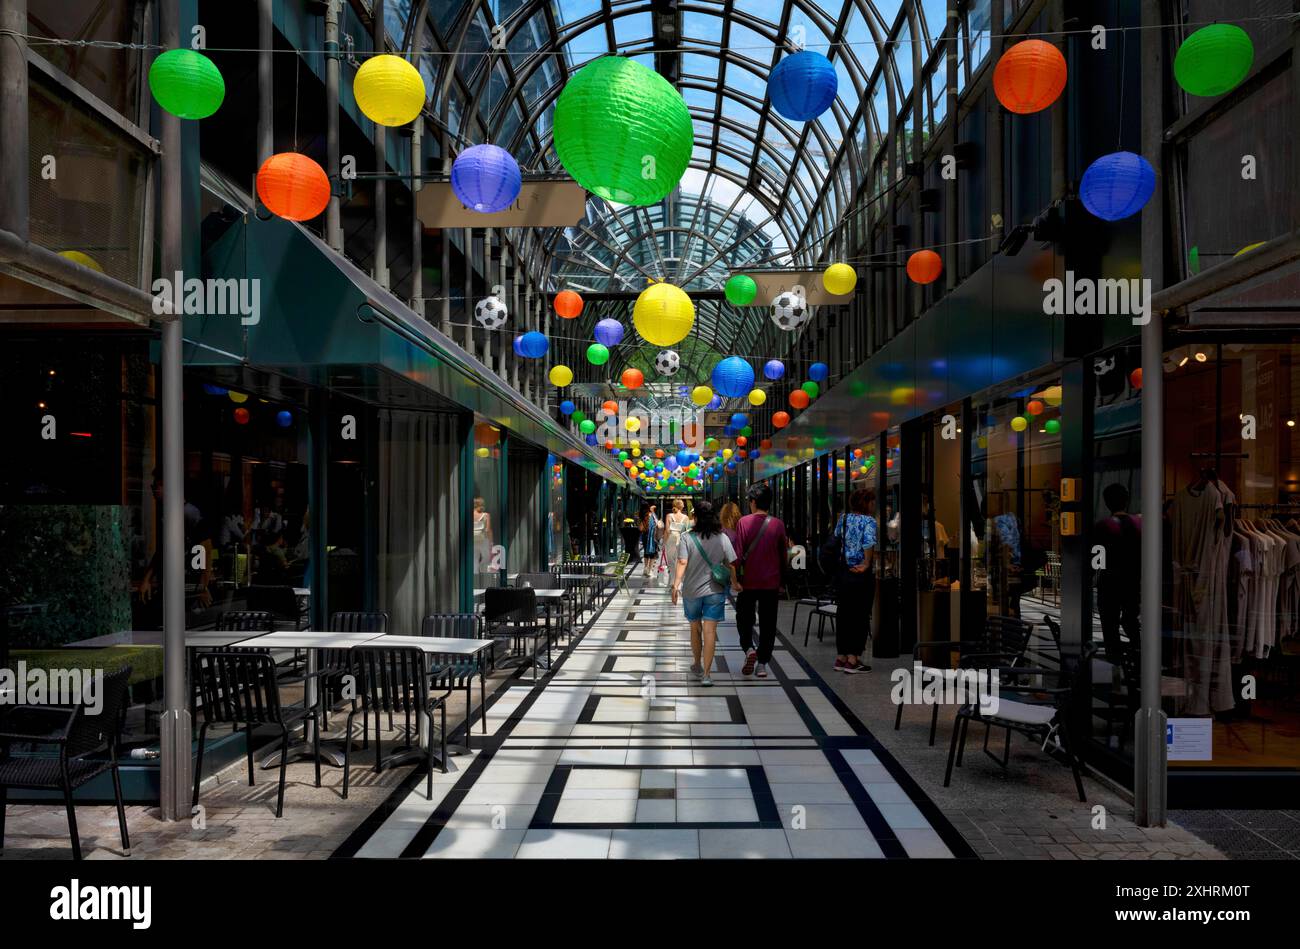 Calwer passage, galerie marchande, centre commercial, décoré, couvert, lanternes, ballons de football, décoration, passants, Stuttgart, Bade-Wuertemberg Banque D'Images